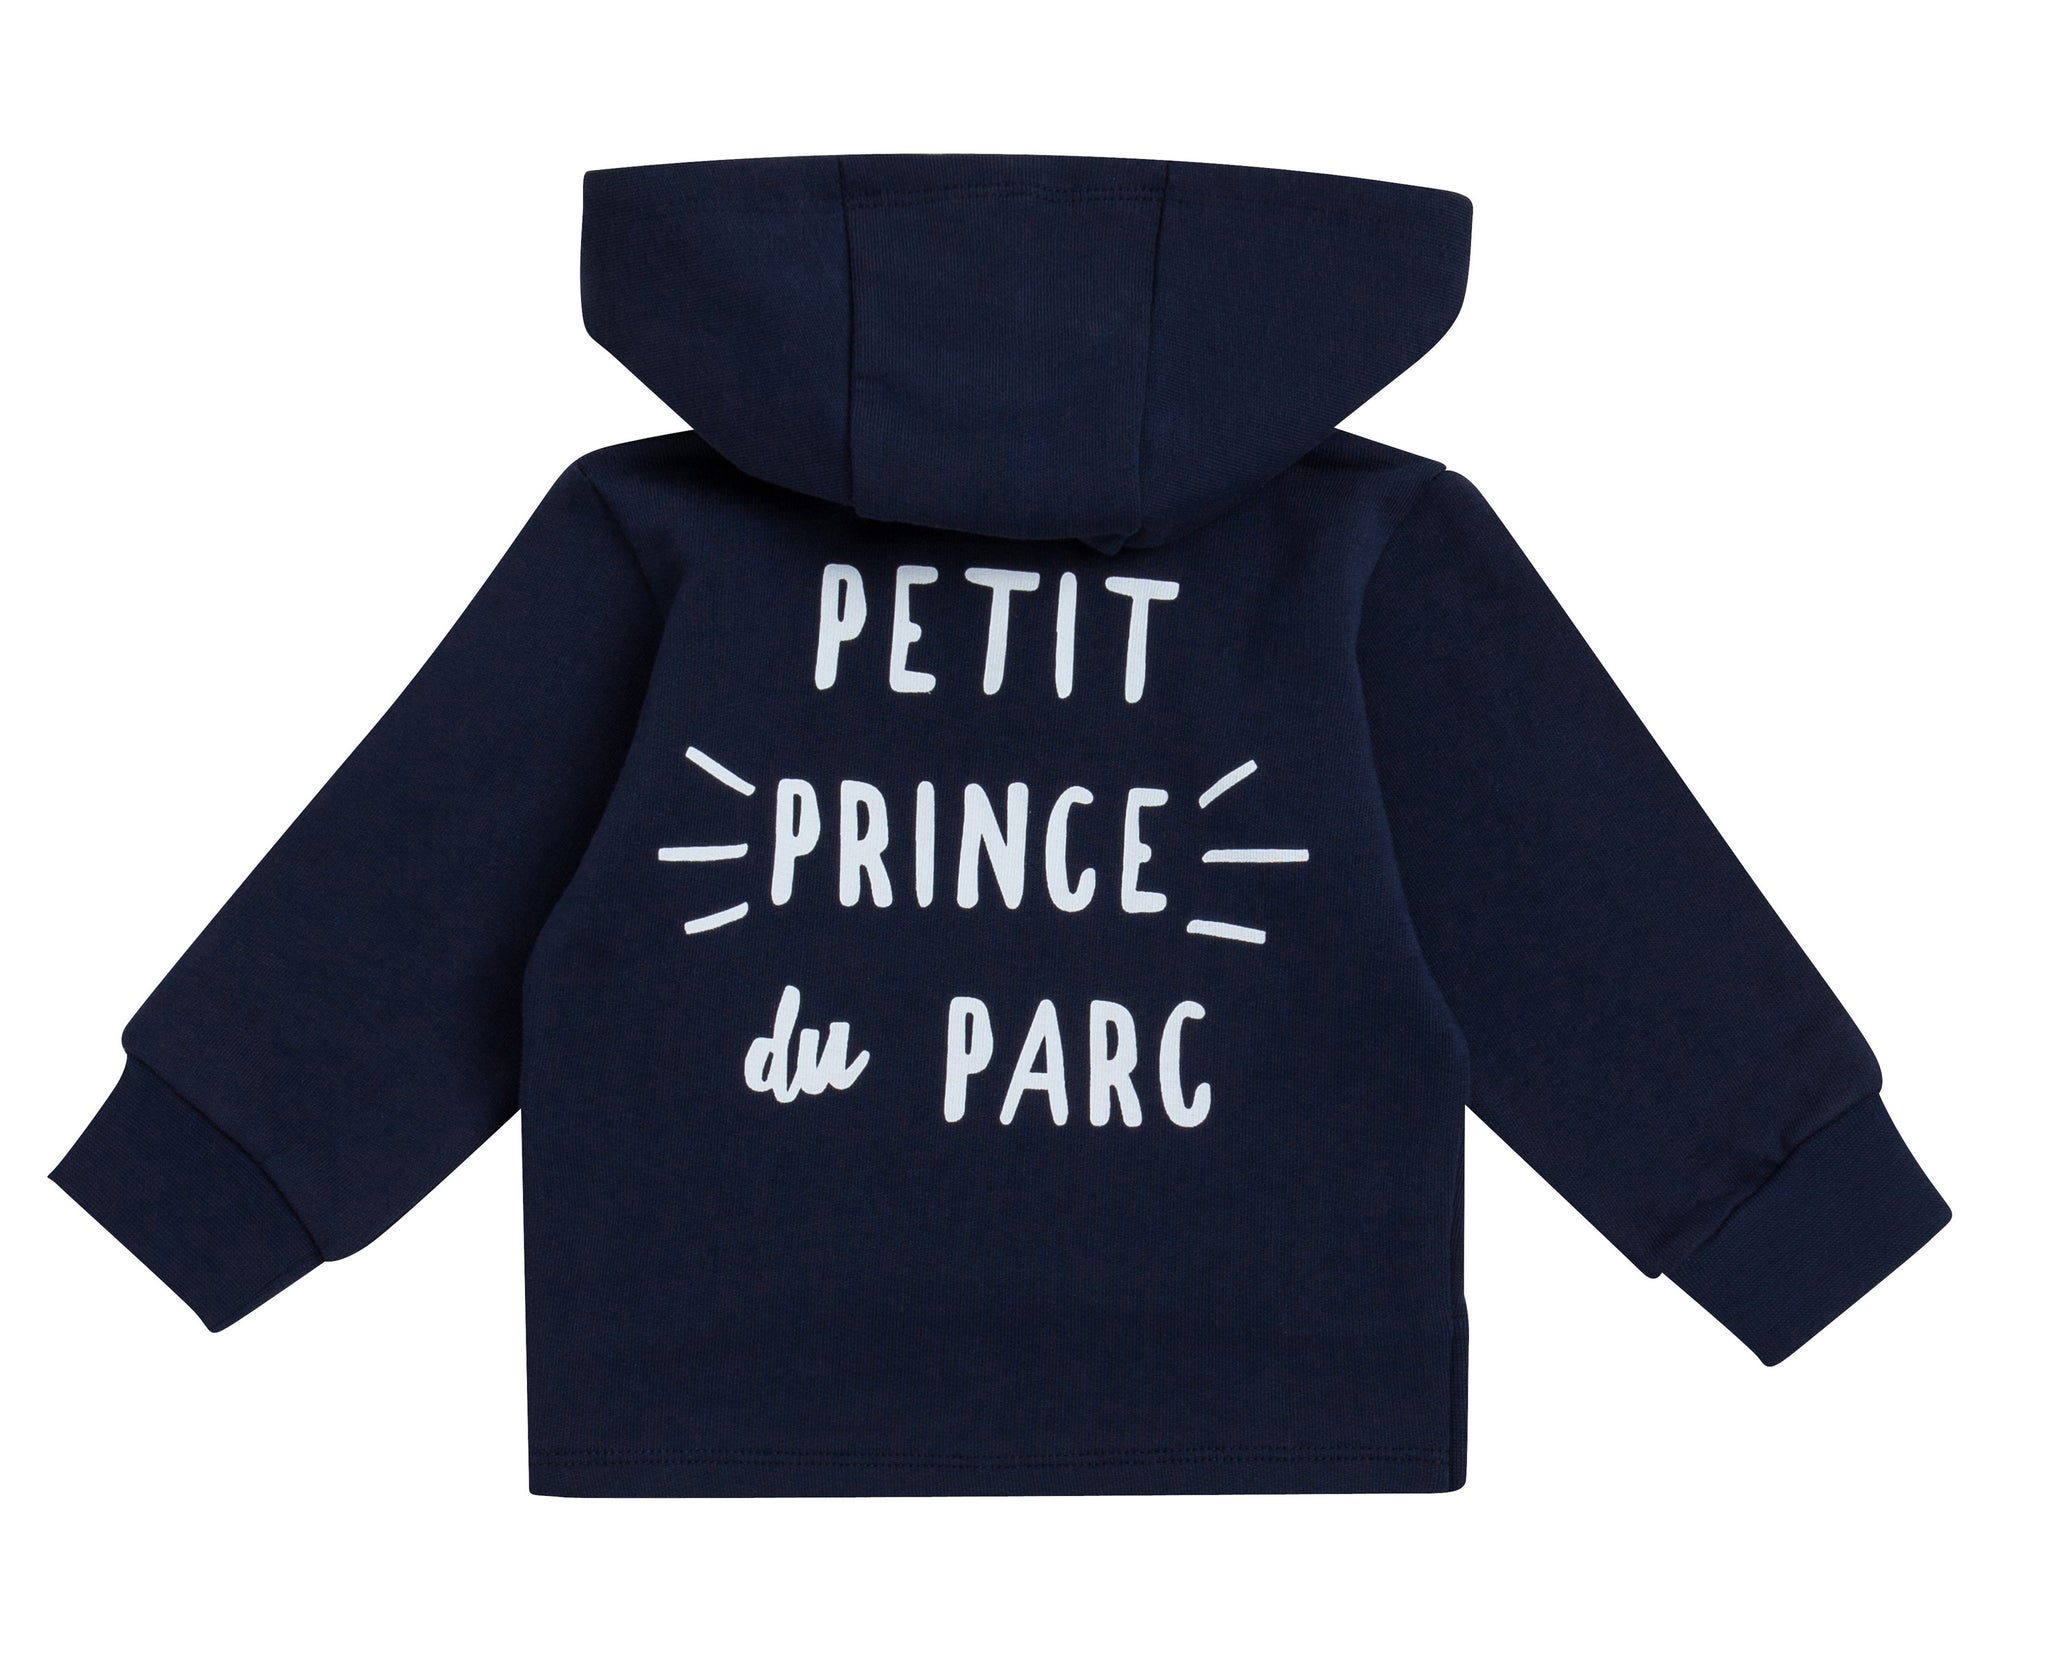 PARIS SAINT GERMAIN Survêtement PSG - Collection Officielle Taille bébé  garçon 6 Mois